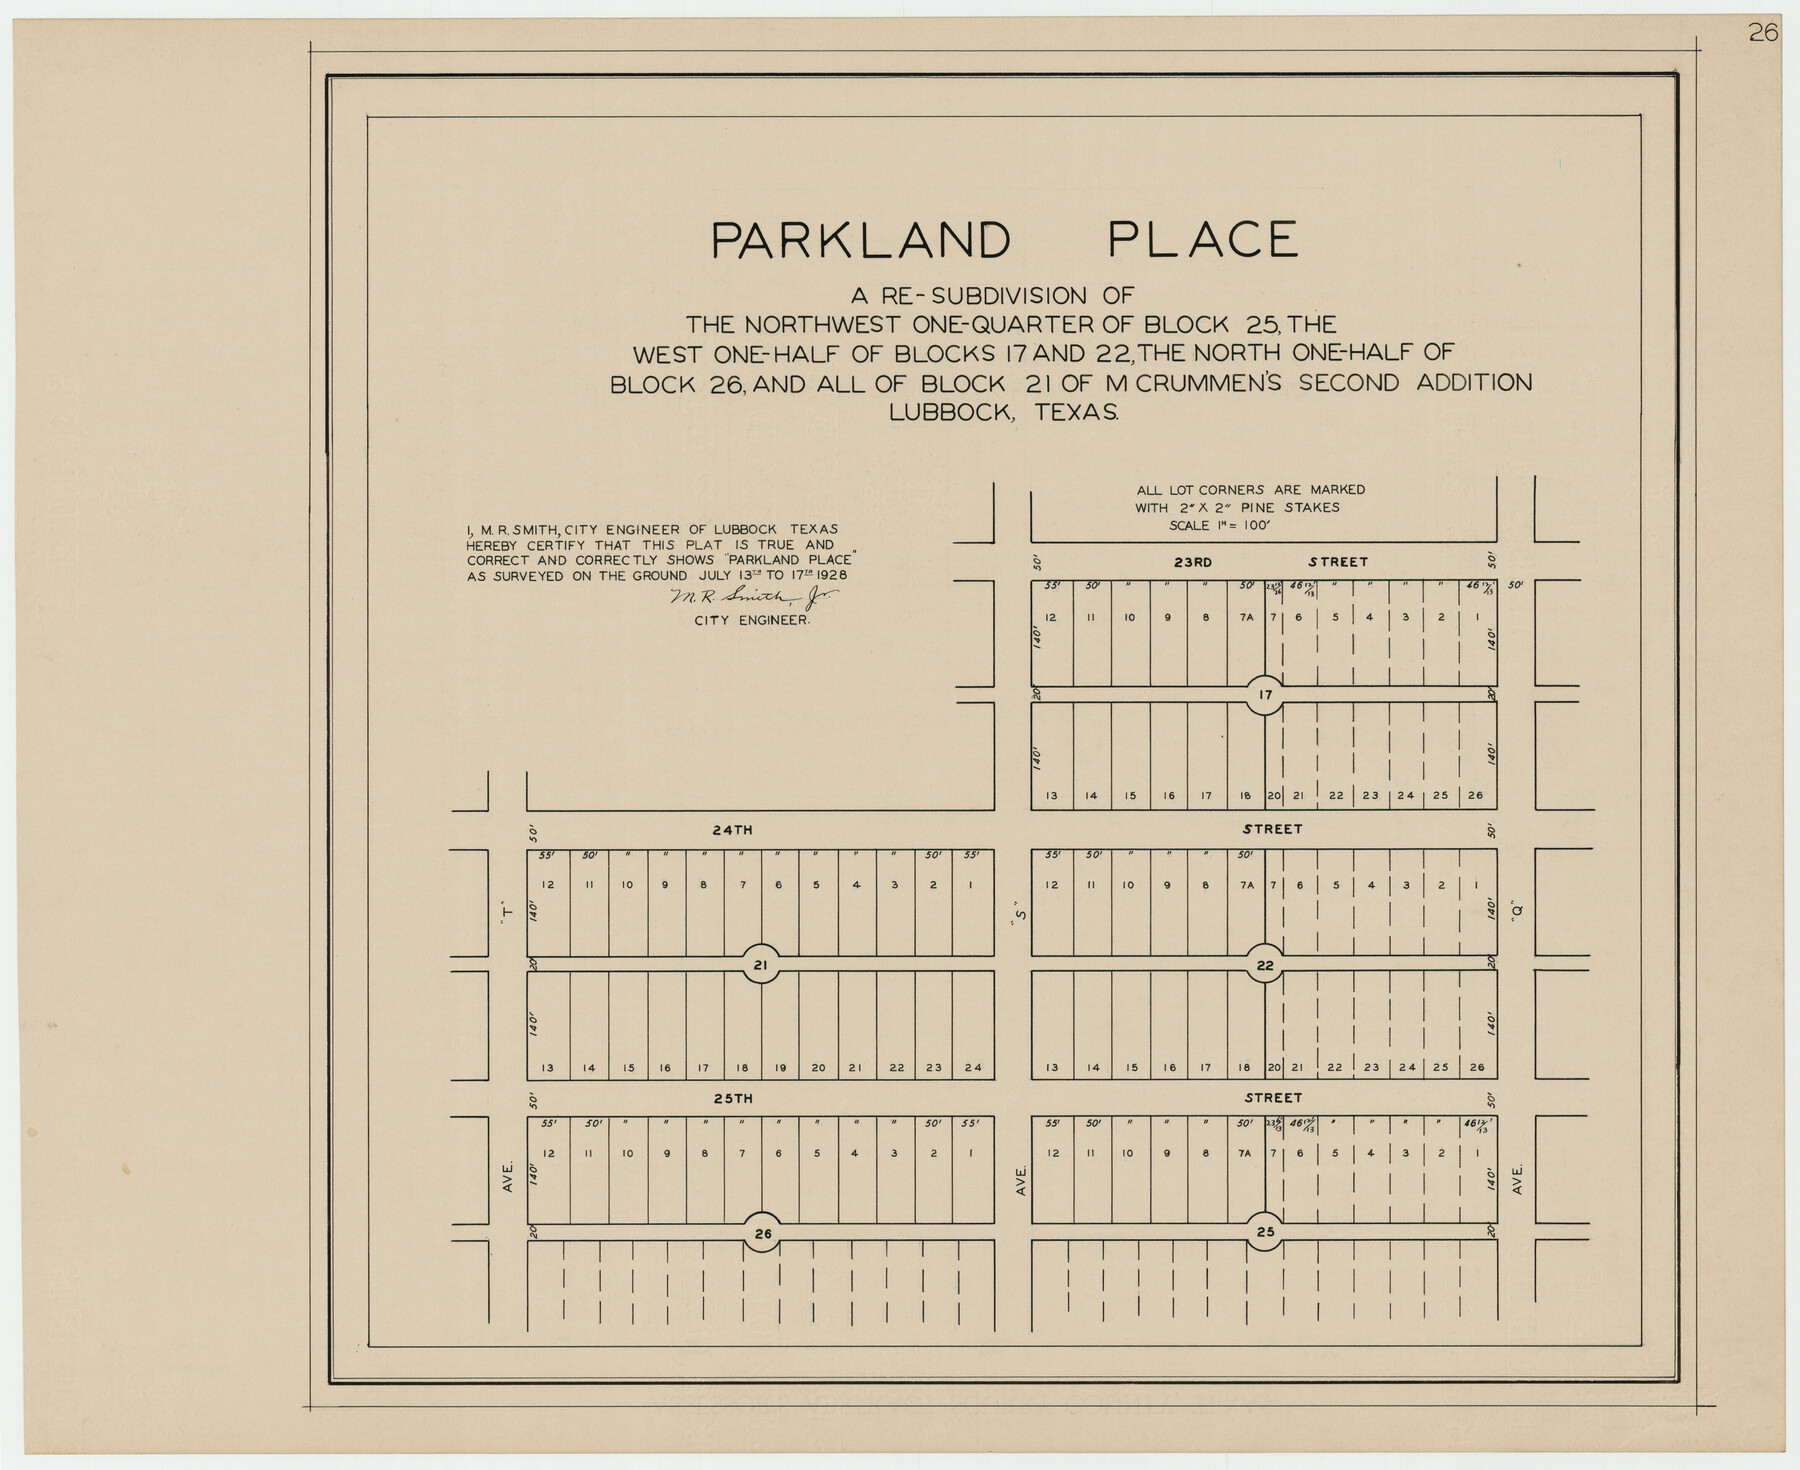 92278, Parkland Place, Twichell Survey Records